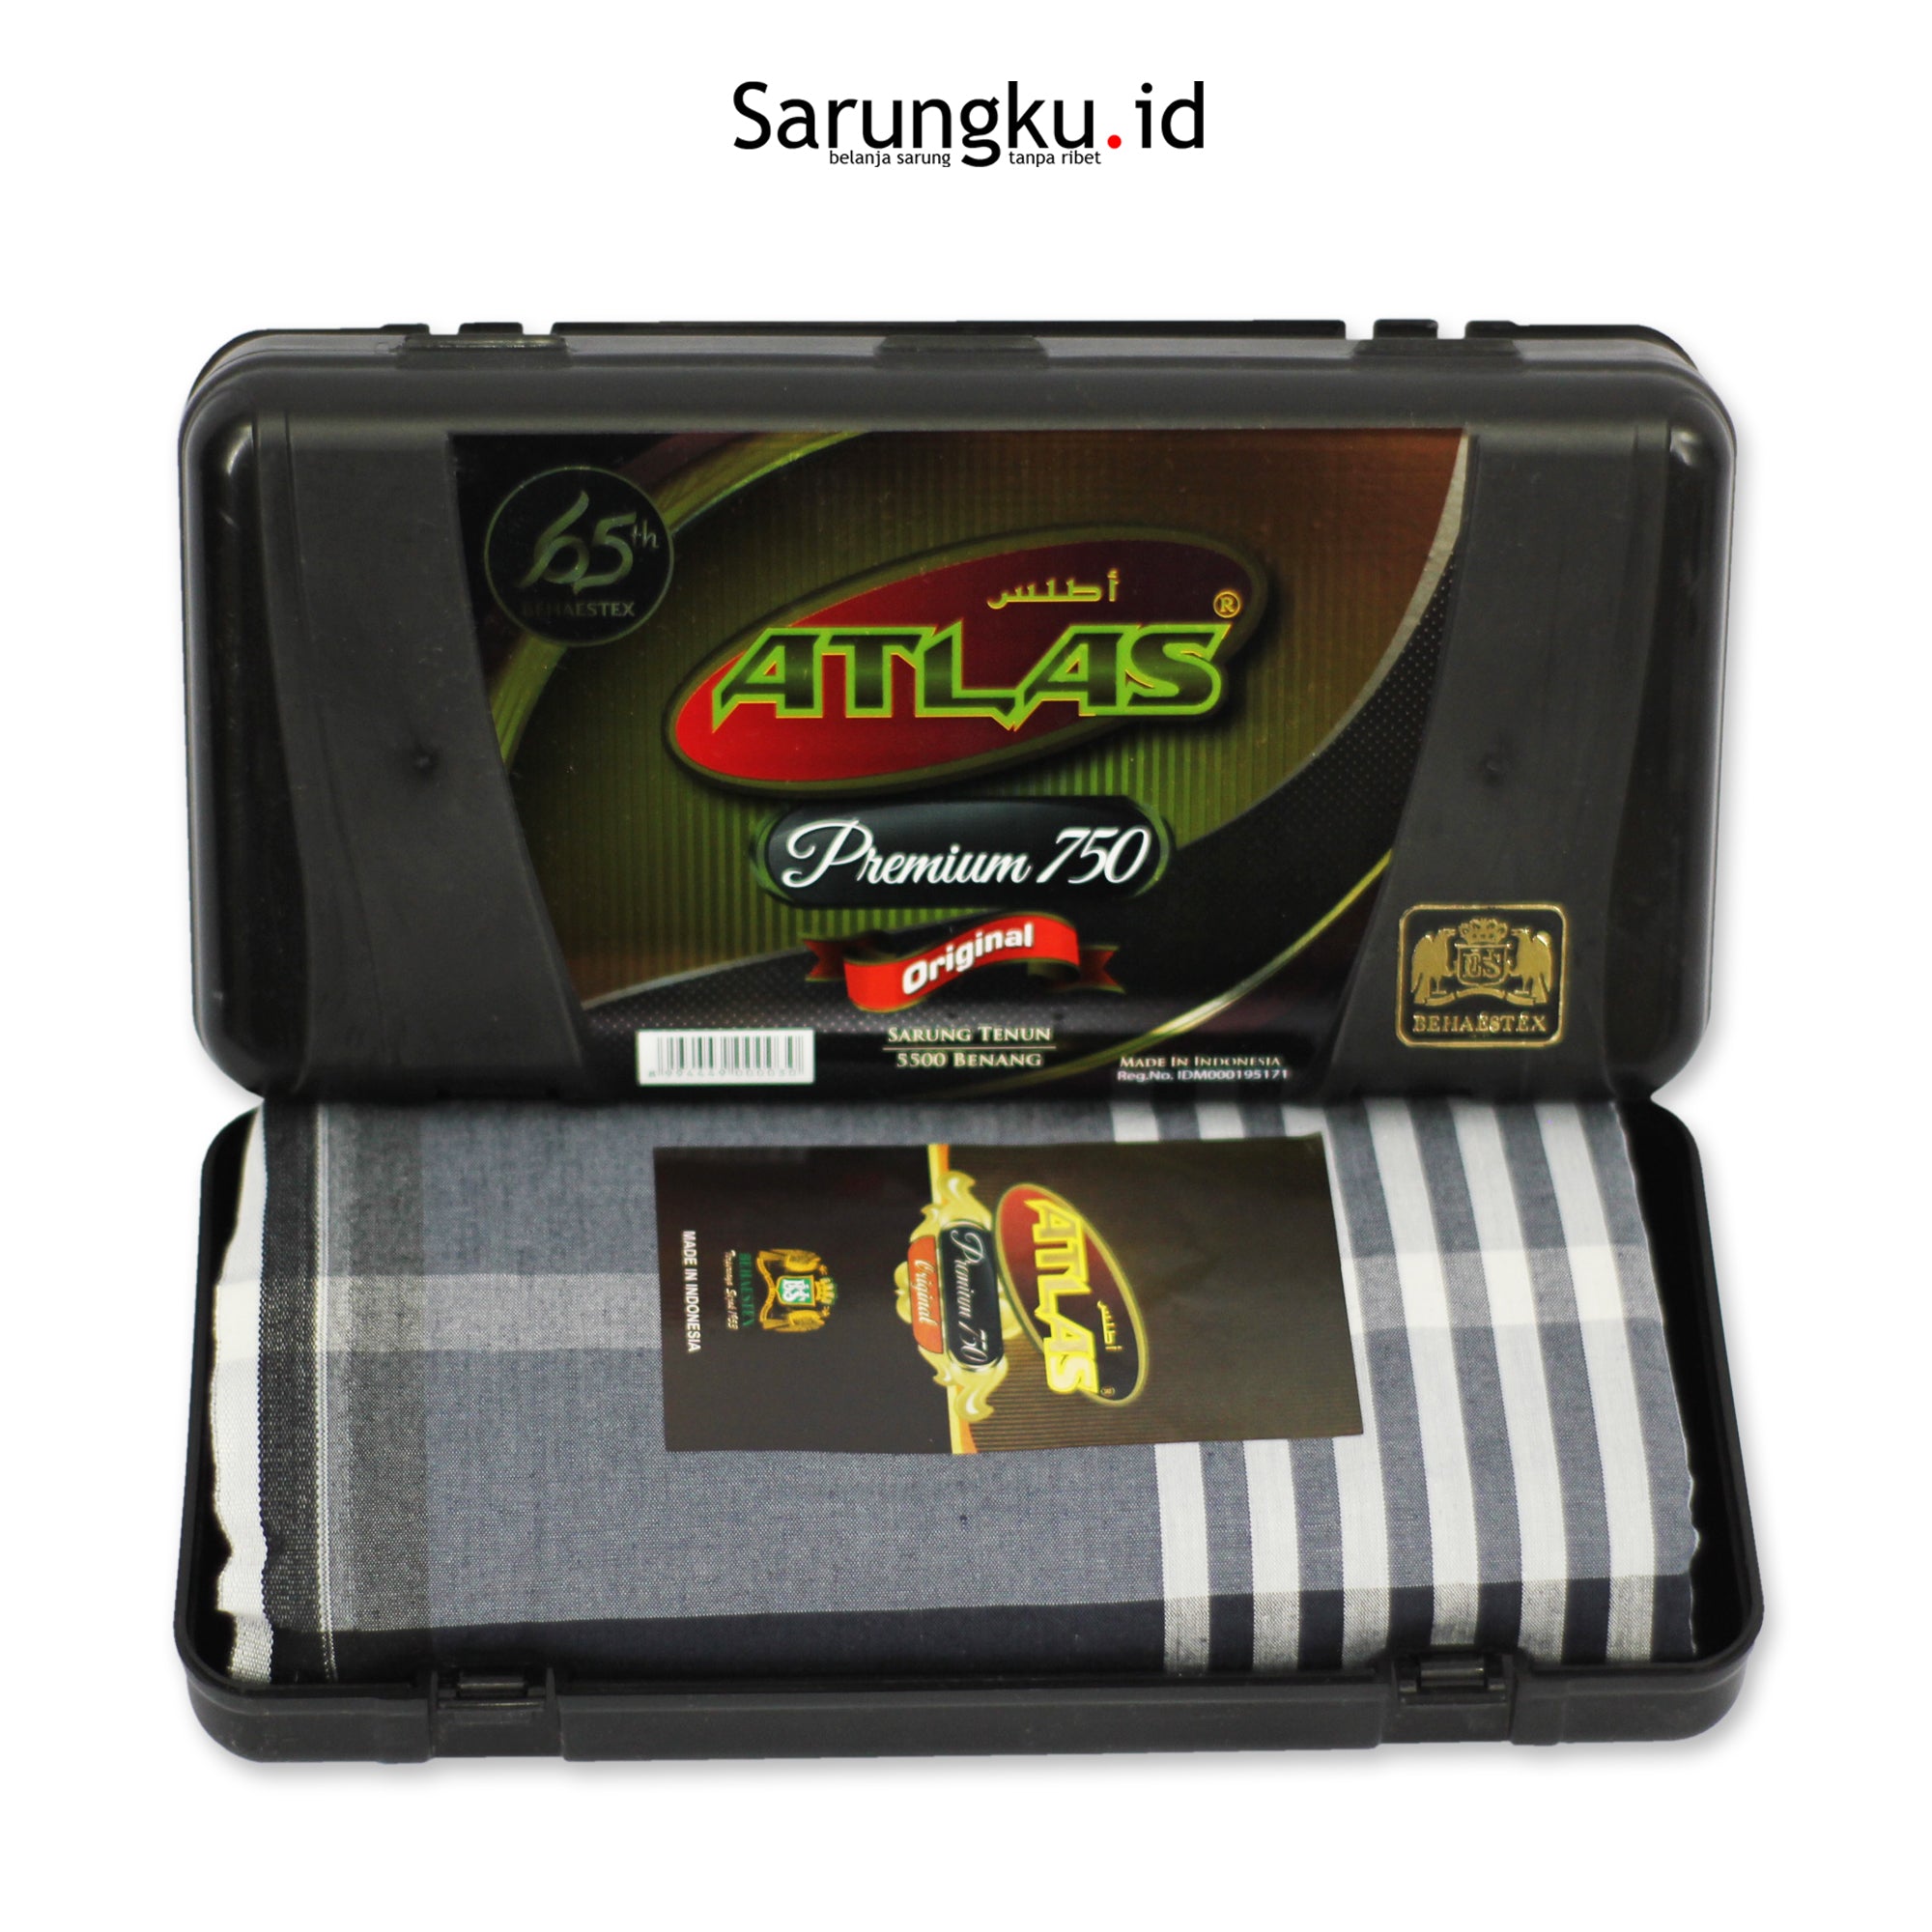 SARUNG ATLAS PREMIUM 750 ORIGINAL ECER/GROSIR-10PCS